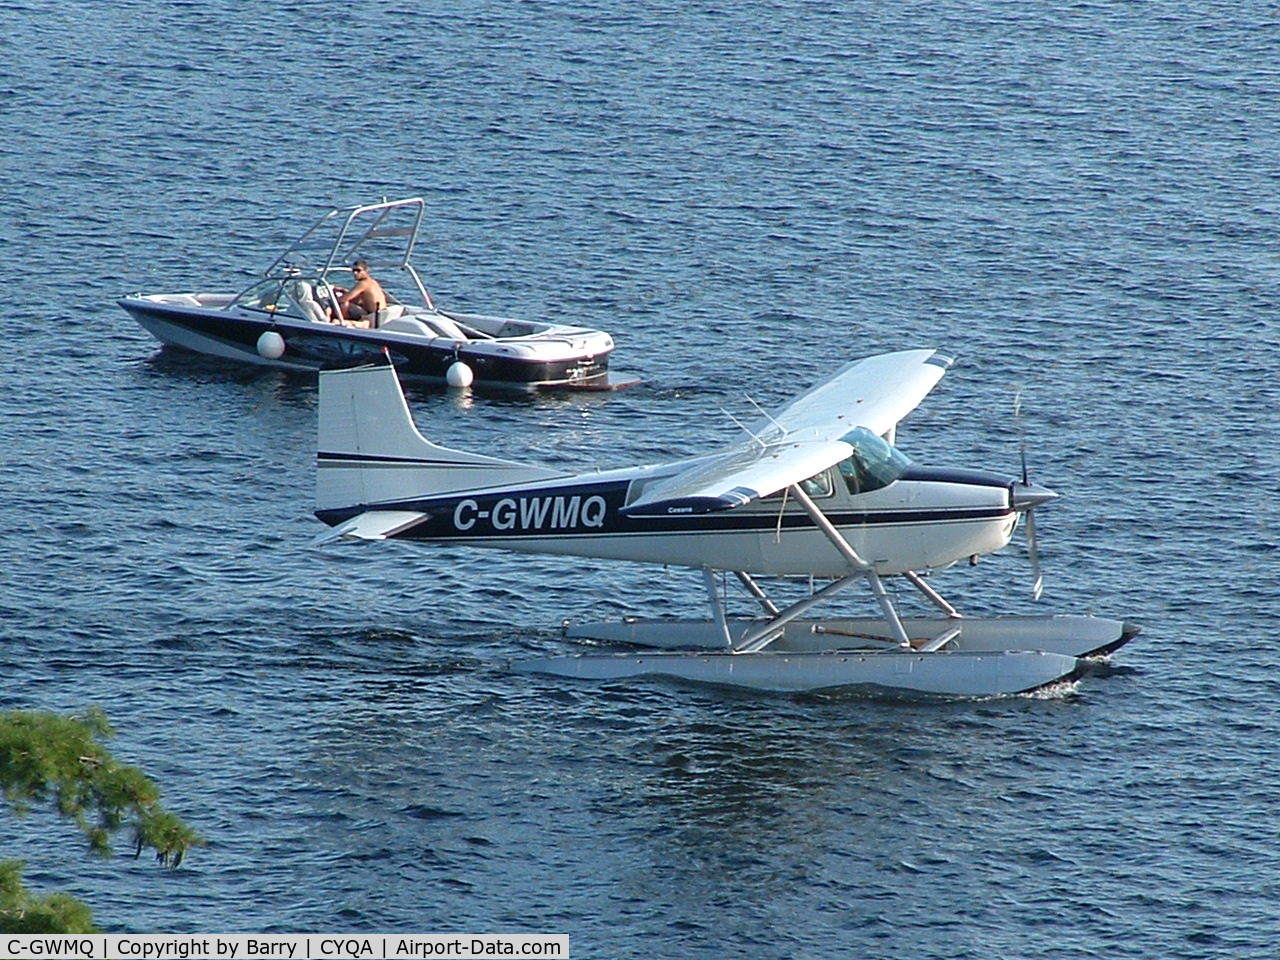 C-GWMQ, 1975 Cessna 180J C/N 180-52564, Windermere Resort waterfront, Muskoka, 29 July 2008